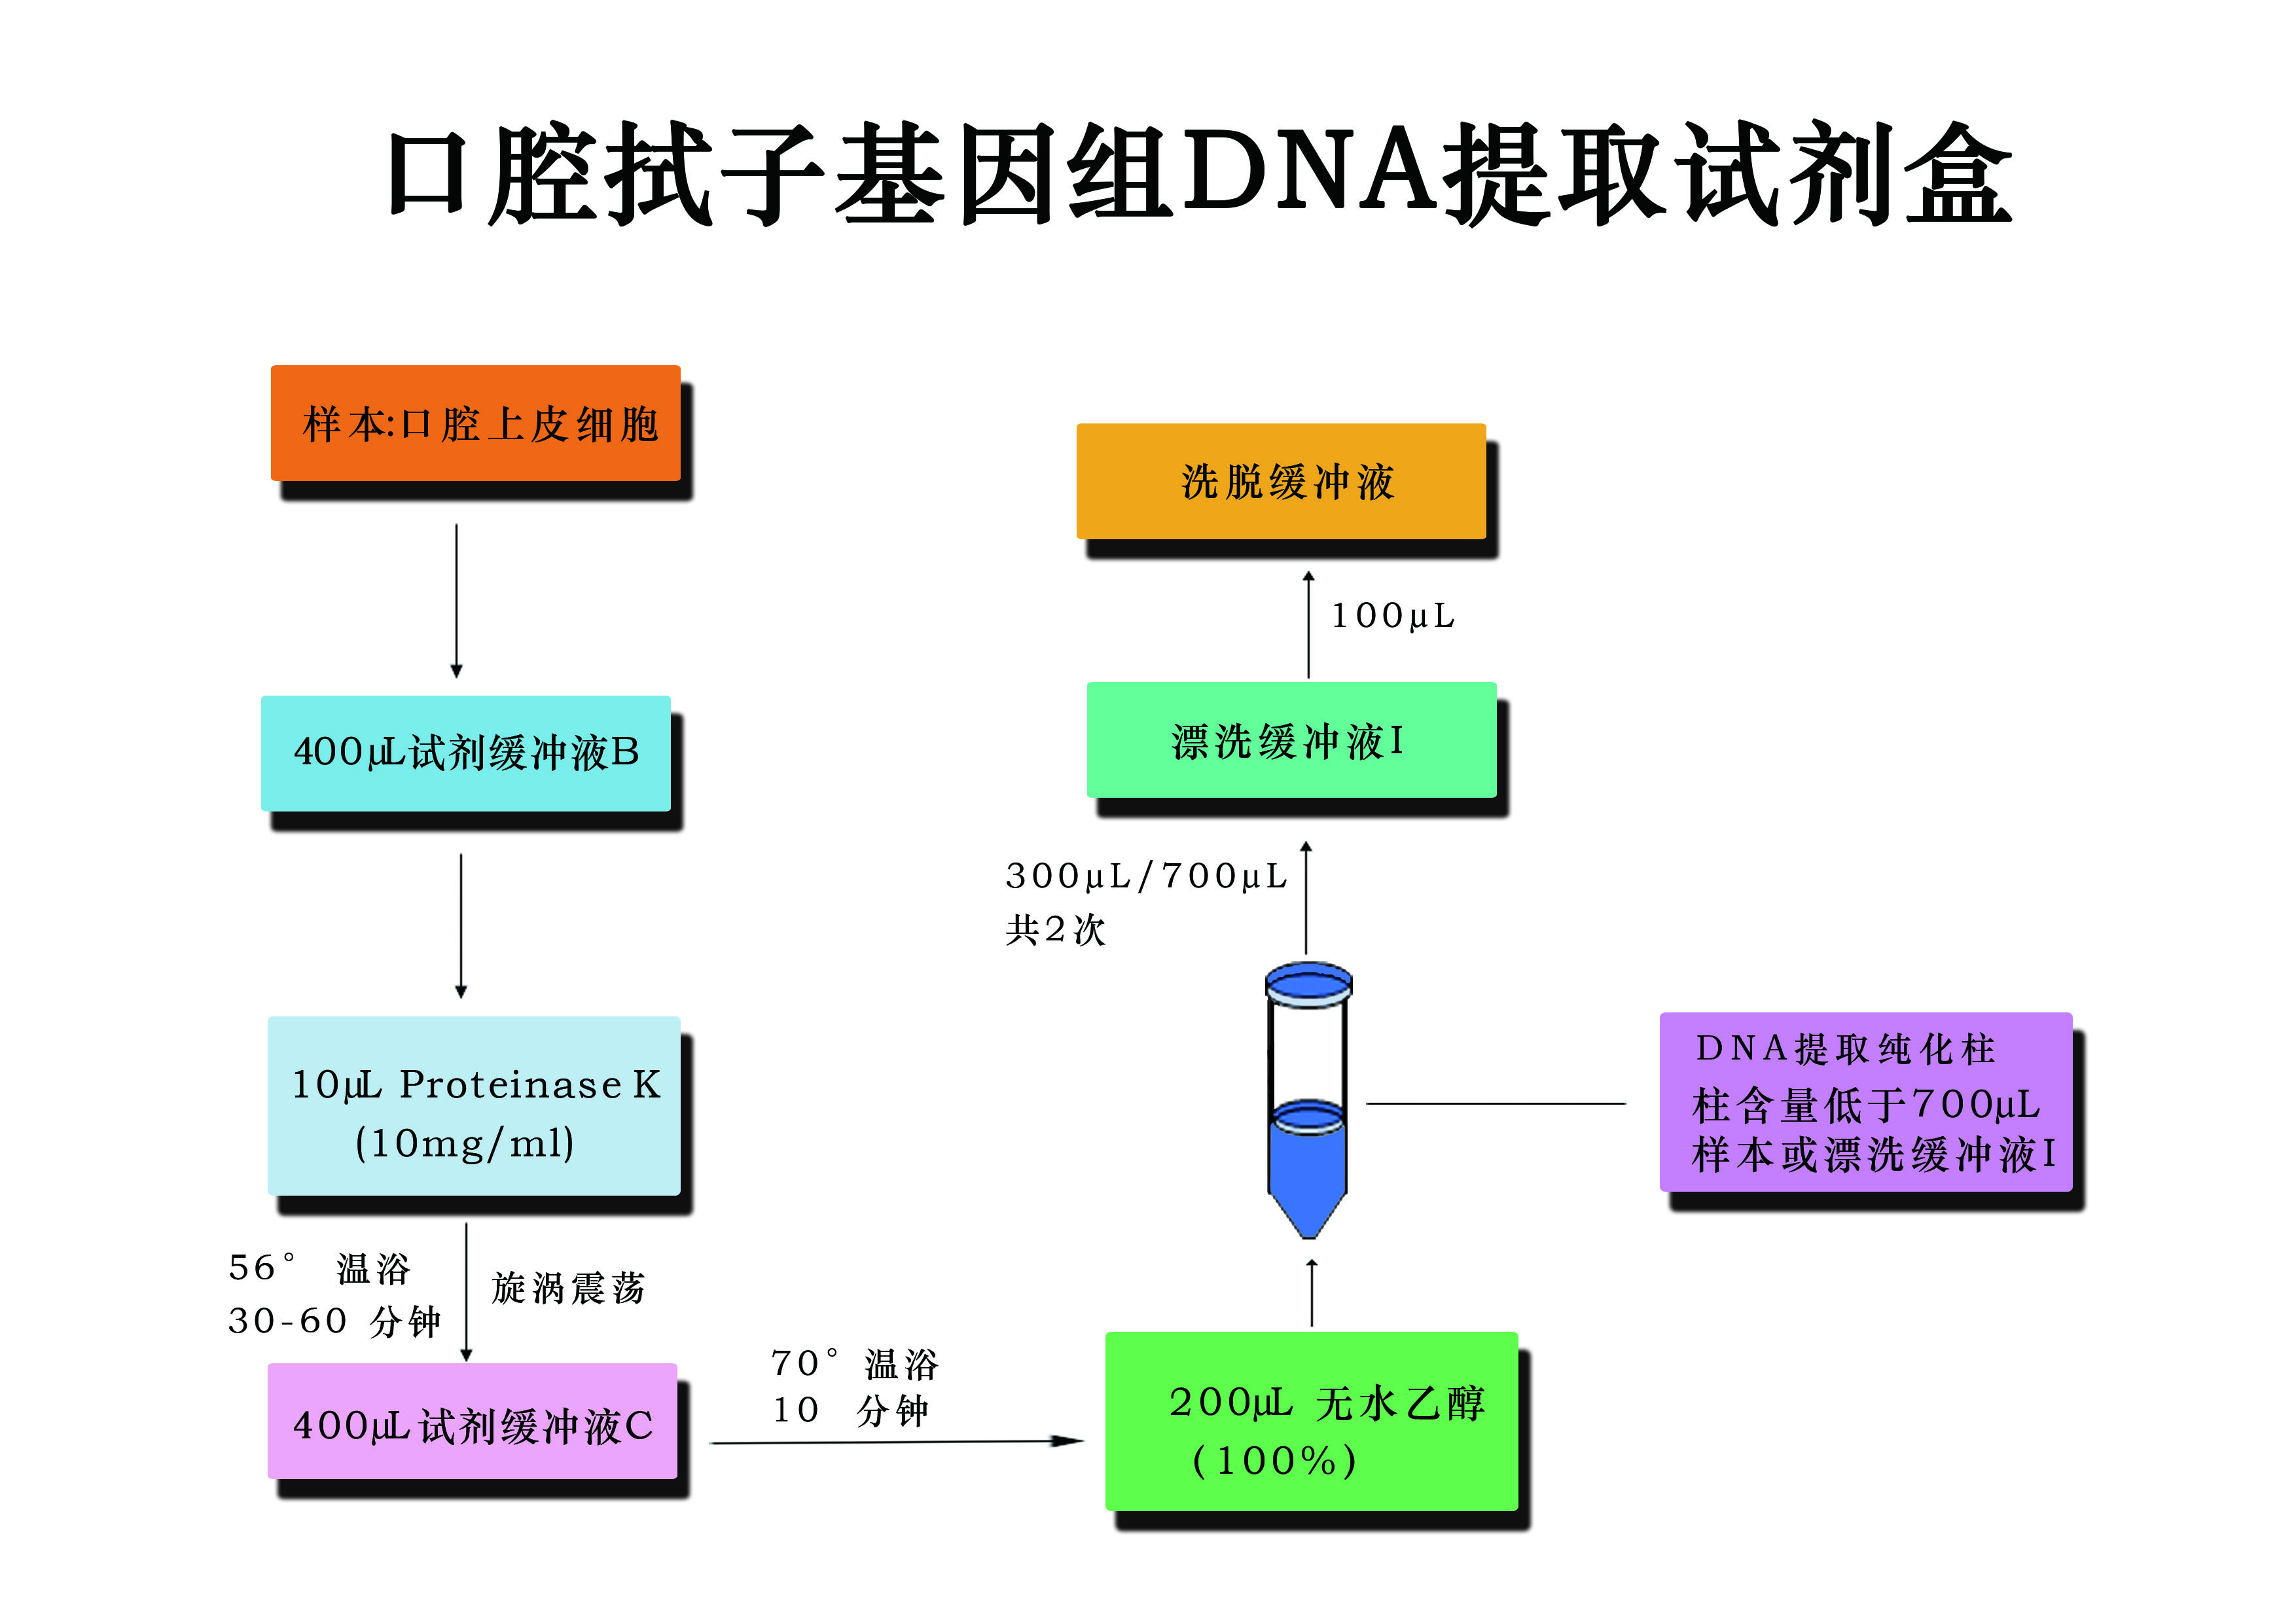 口腔式子基因组DNA提取试剂盒流程图